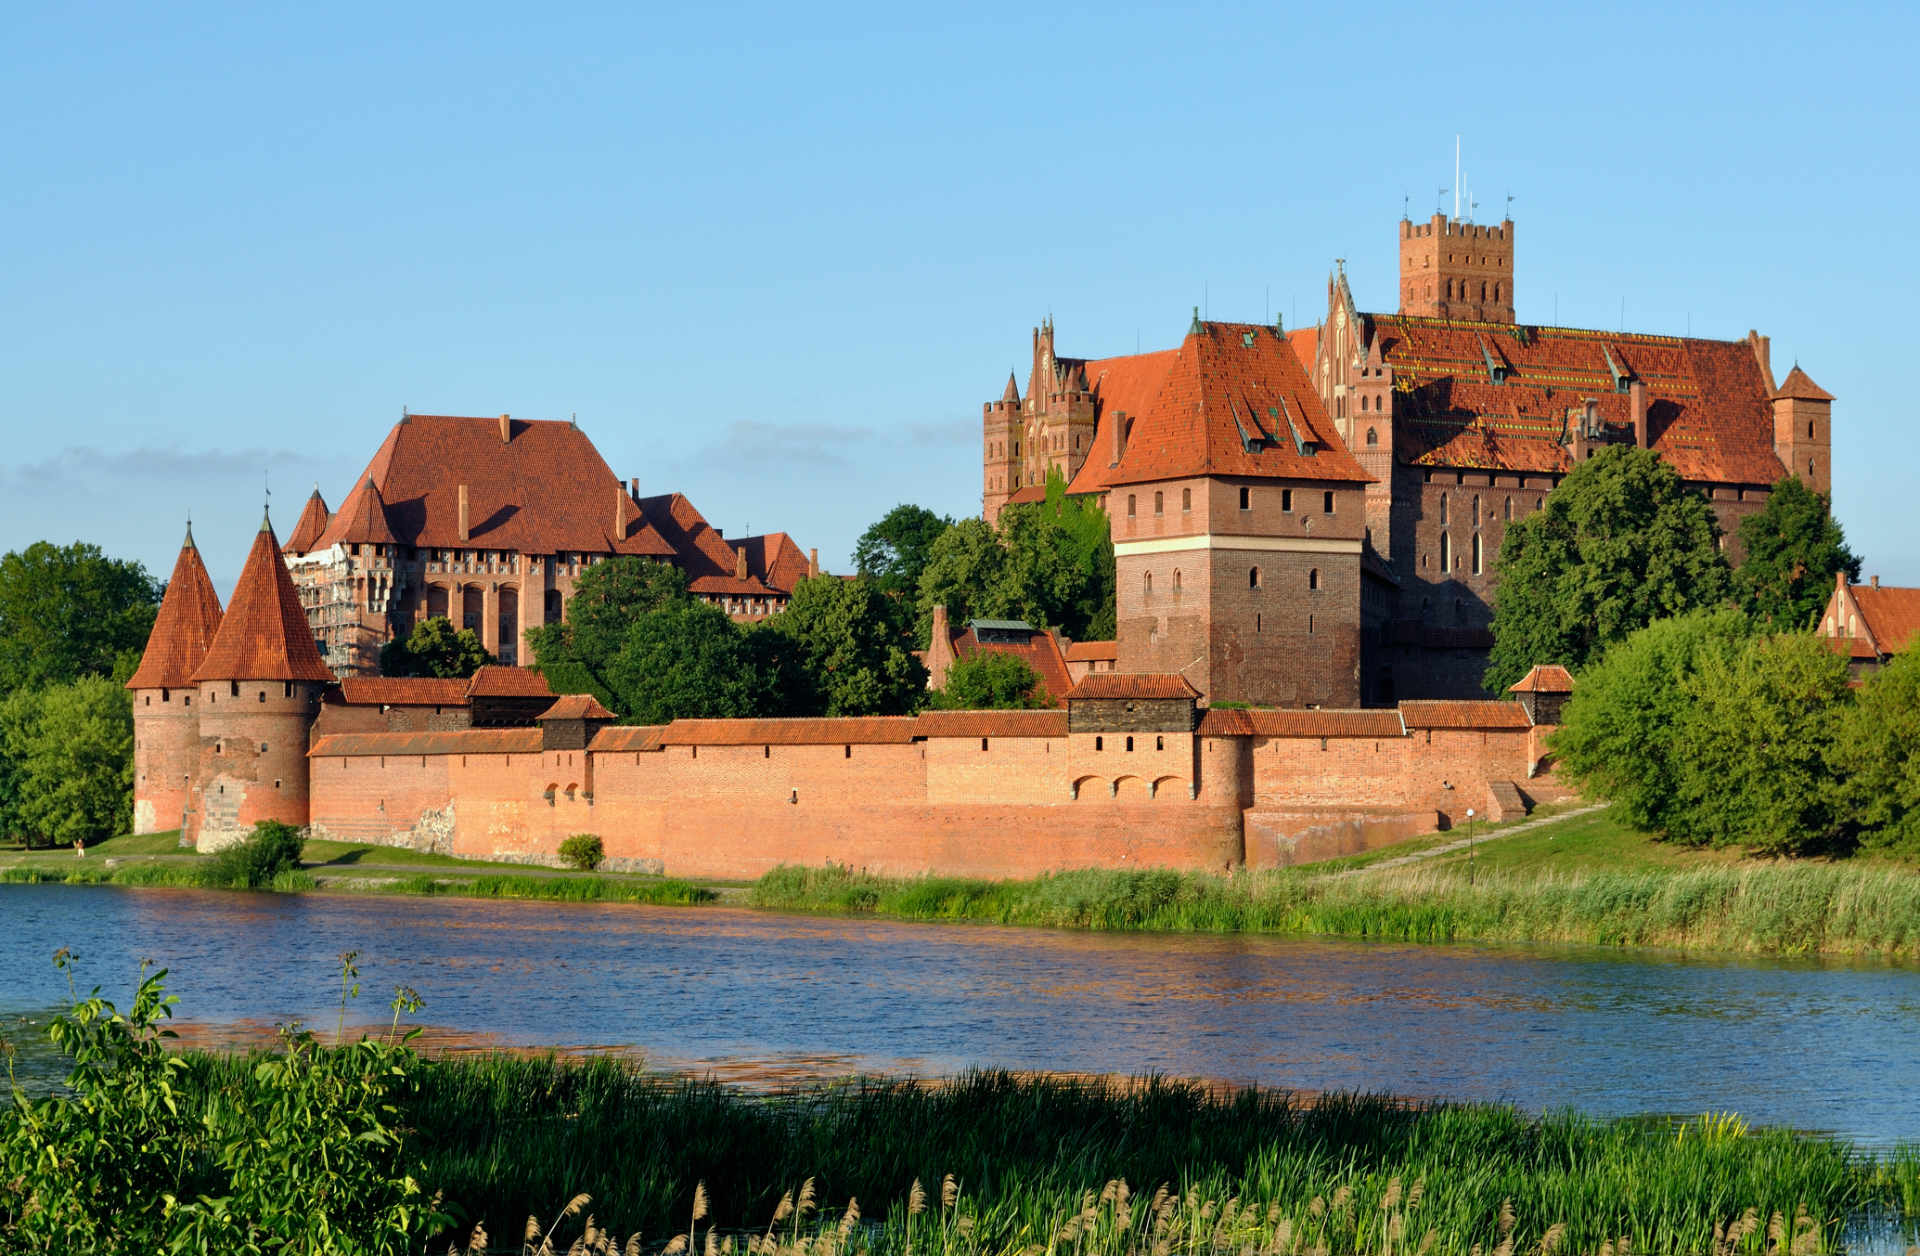 Zu sehen ist das Burgpanorama der Marienburg von der Weichsel aus, Bild: DerHexer derivate work Carschten